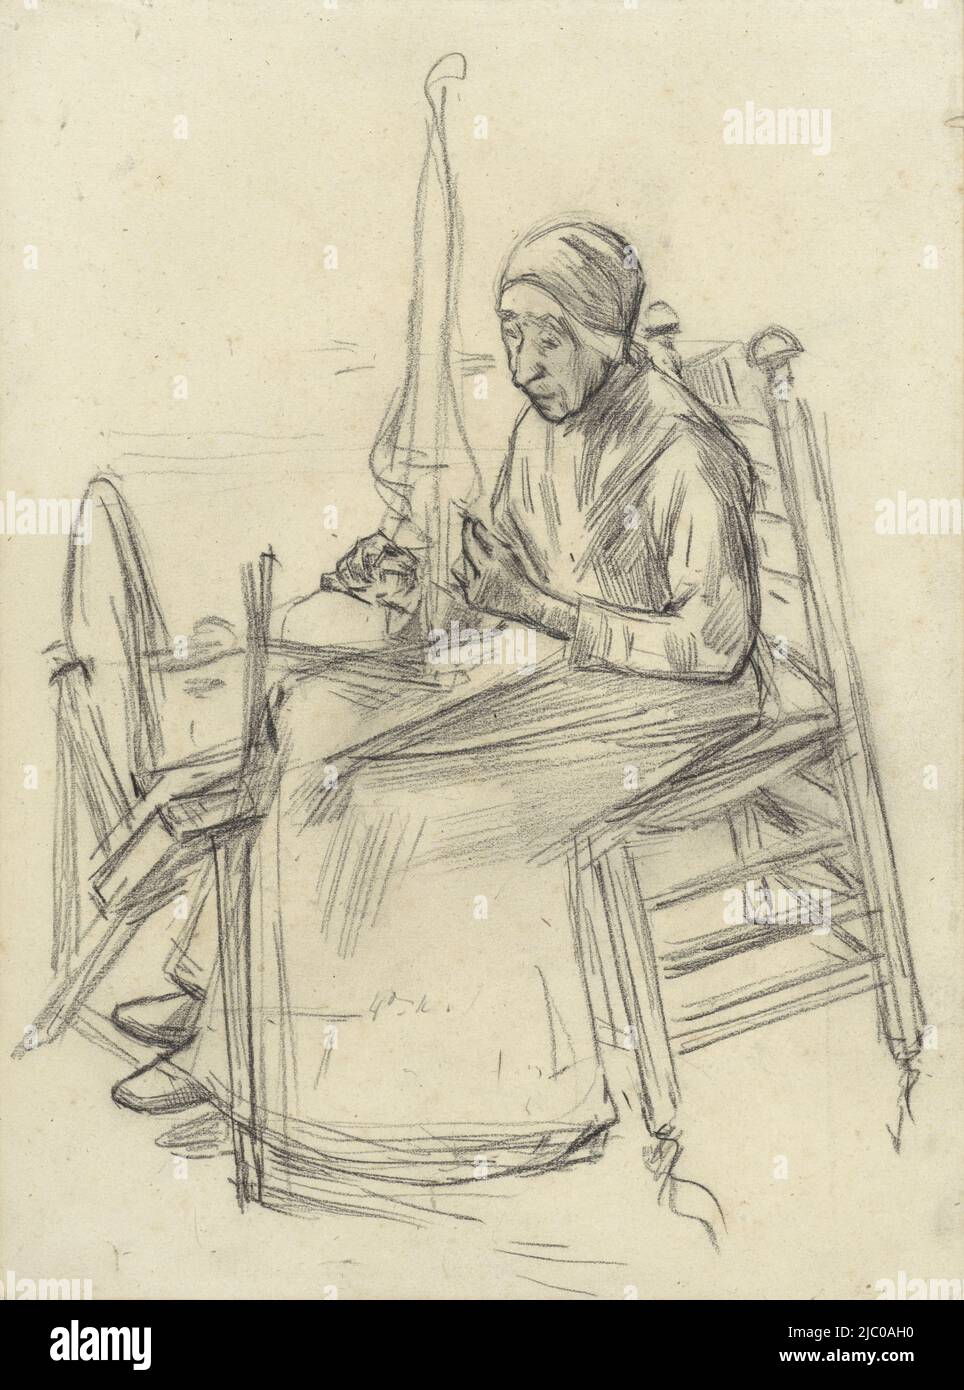 Femme à tourner, dessinateur: Anthon Gerhard Alexander van Rappard, 1868 - 1892, papier, h 307 mm × l 228 mm Banque D'Images